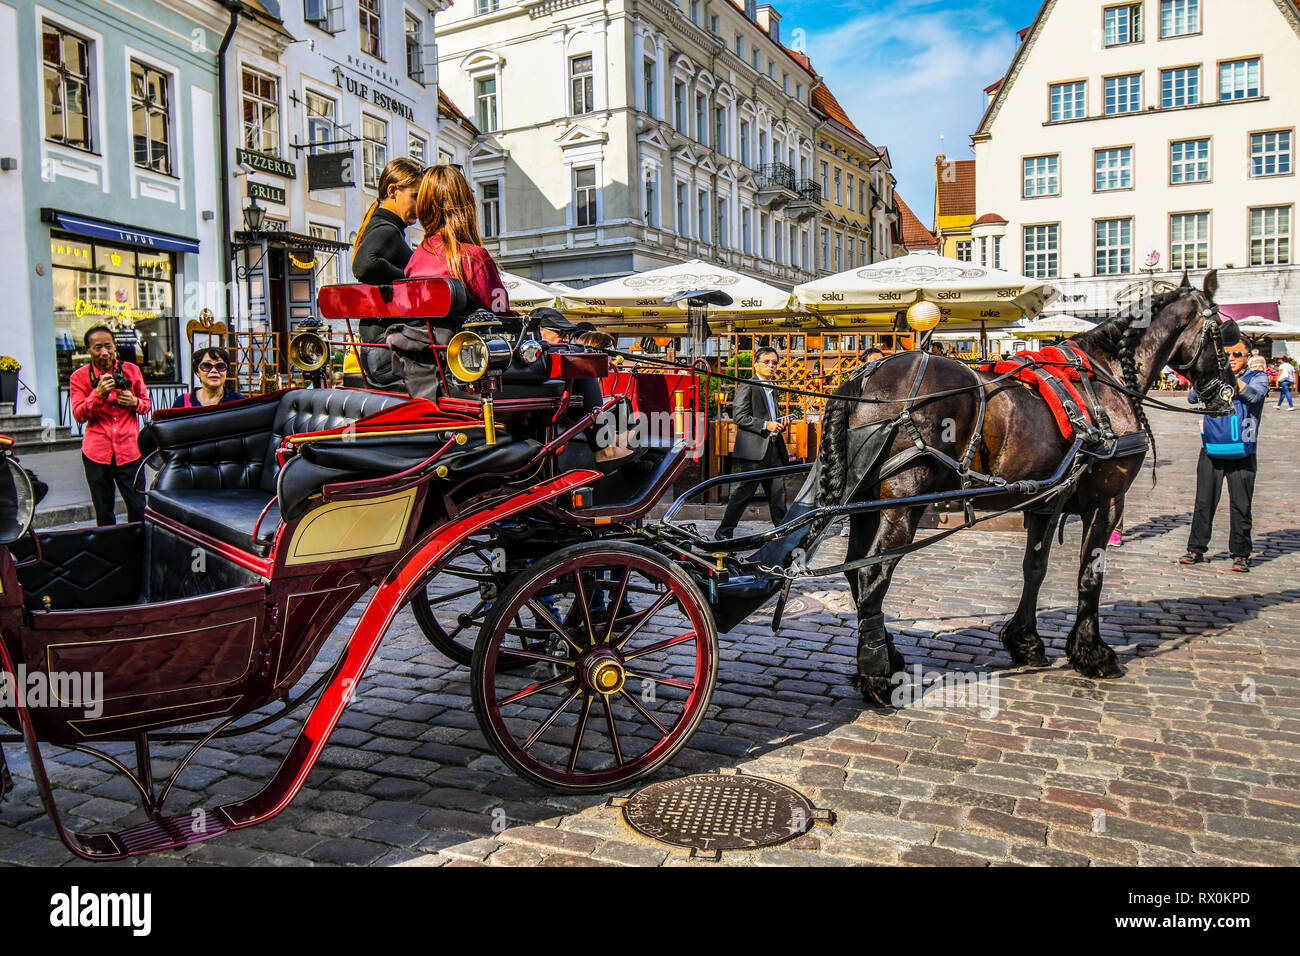 Eine Pferdekutsche und Reiter für die Fahrt in die Stadt an einem langen Sommertag mit Touristen, die mittelalterlichen Gassen, Bars und Cafes Stockfoto